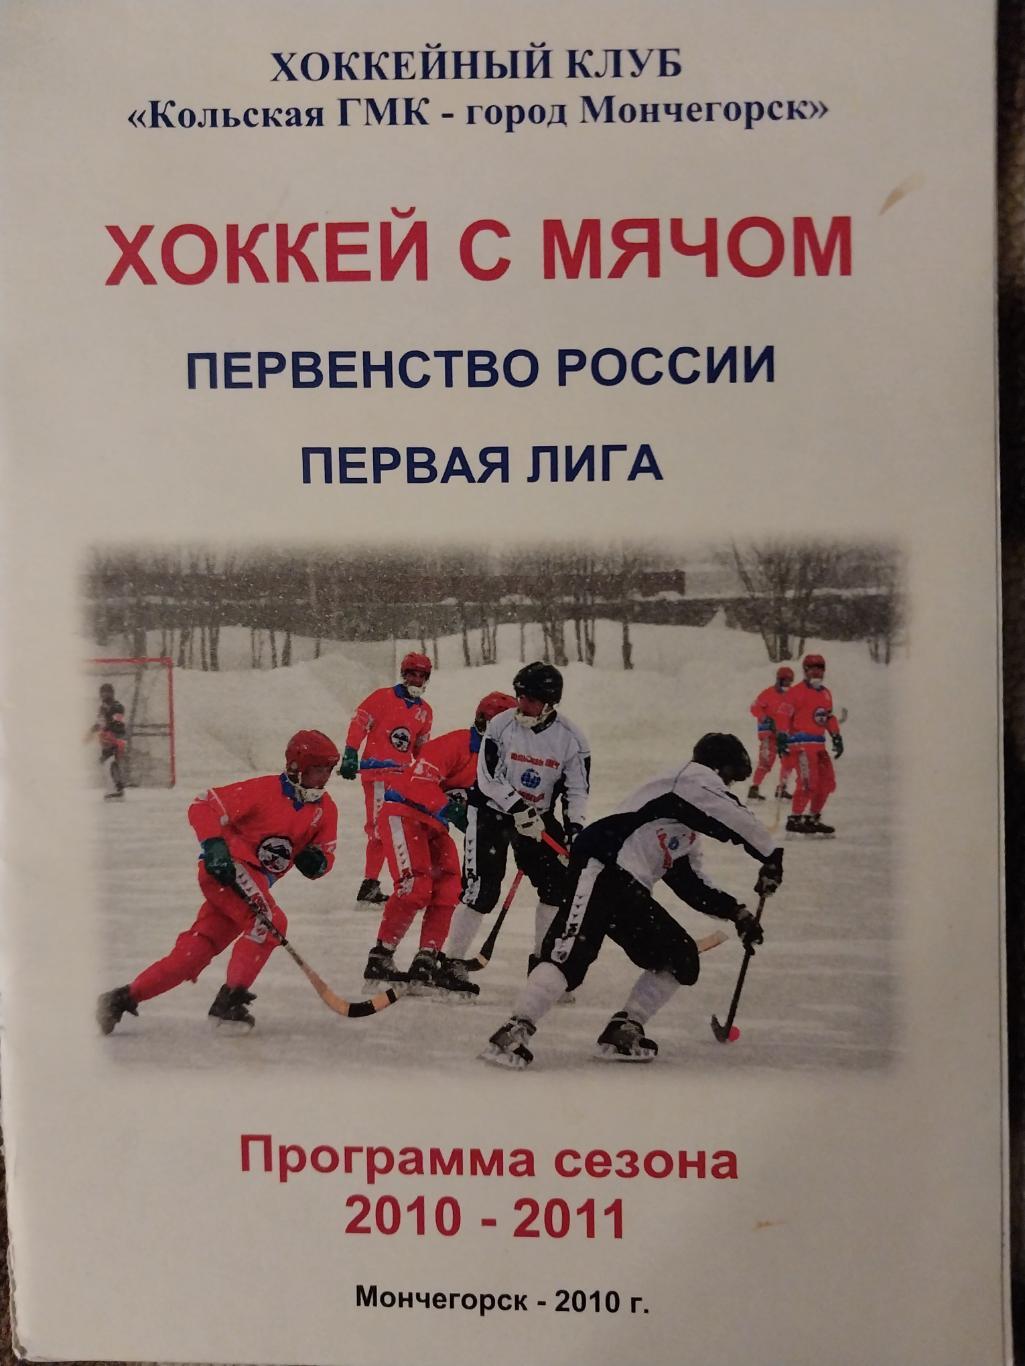 Хоккей с мячом. Мончегорск. ХК Кольская ГМК 2011-2012